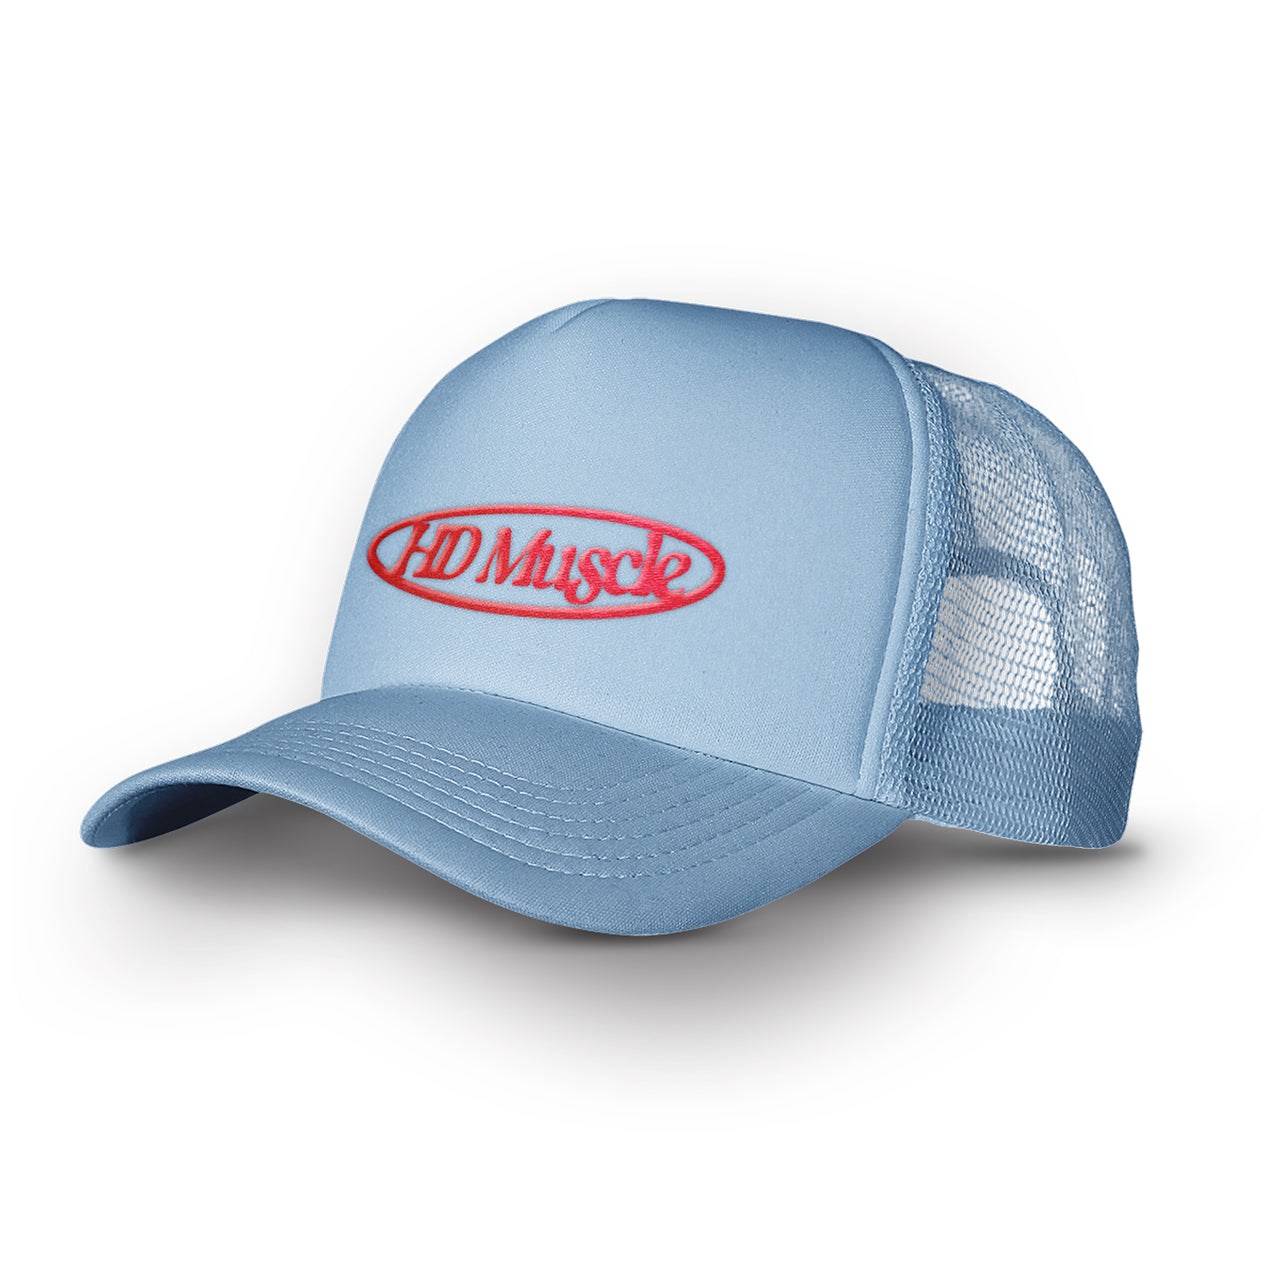 Archive Trucker Hat — Grey - HD MUSCLE